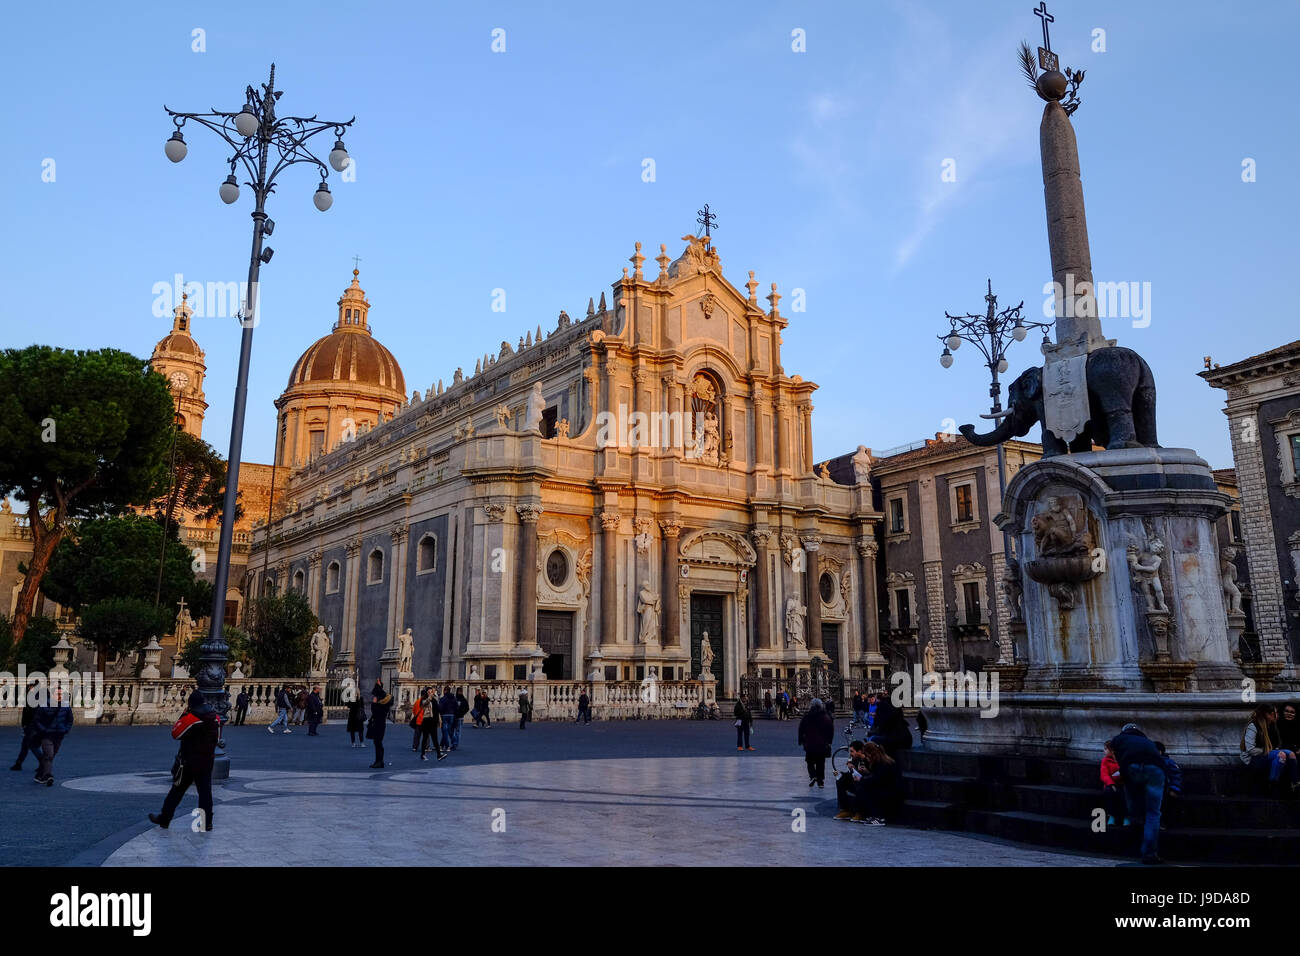 La cathédrale, dédiée à Saint Agatha, Catane, Sicile, Italie, Europe Banque D'Images